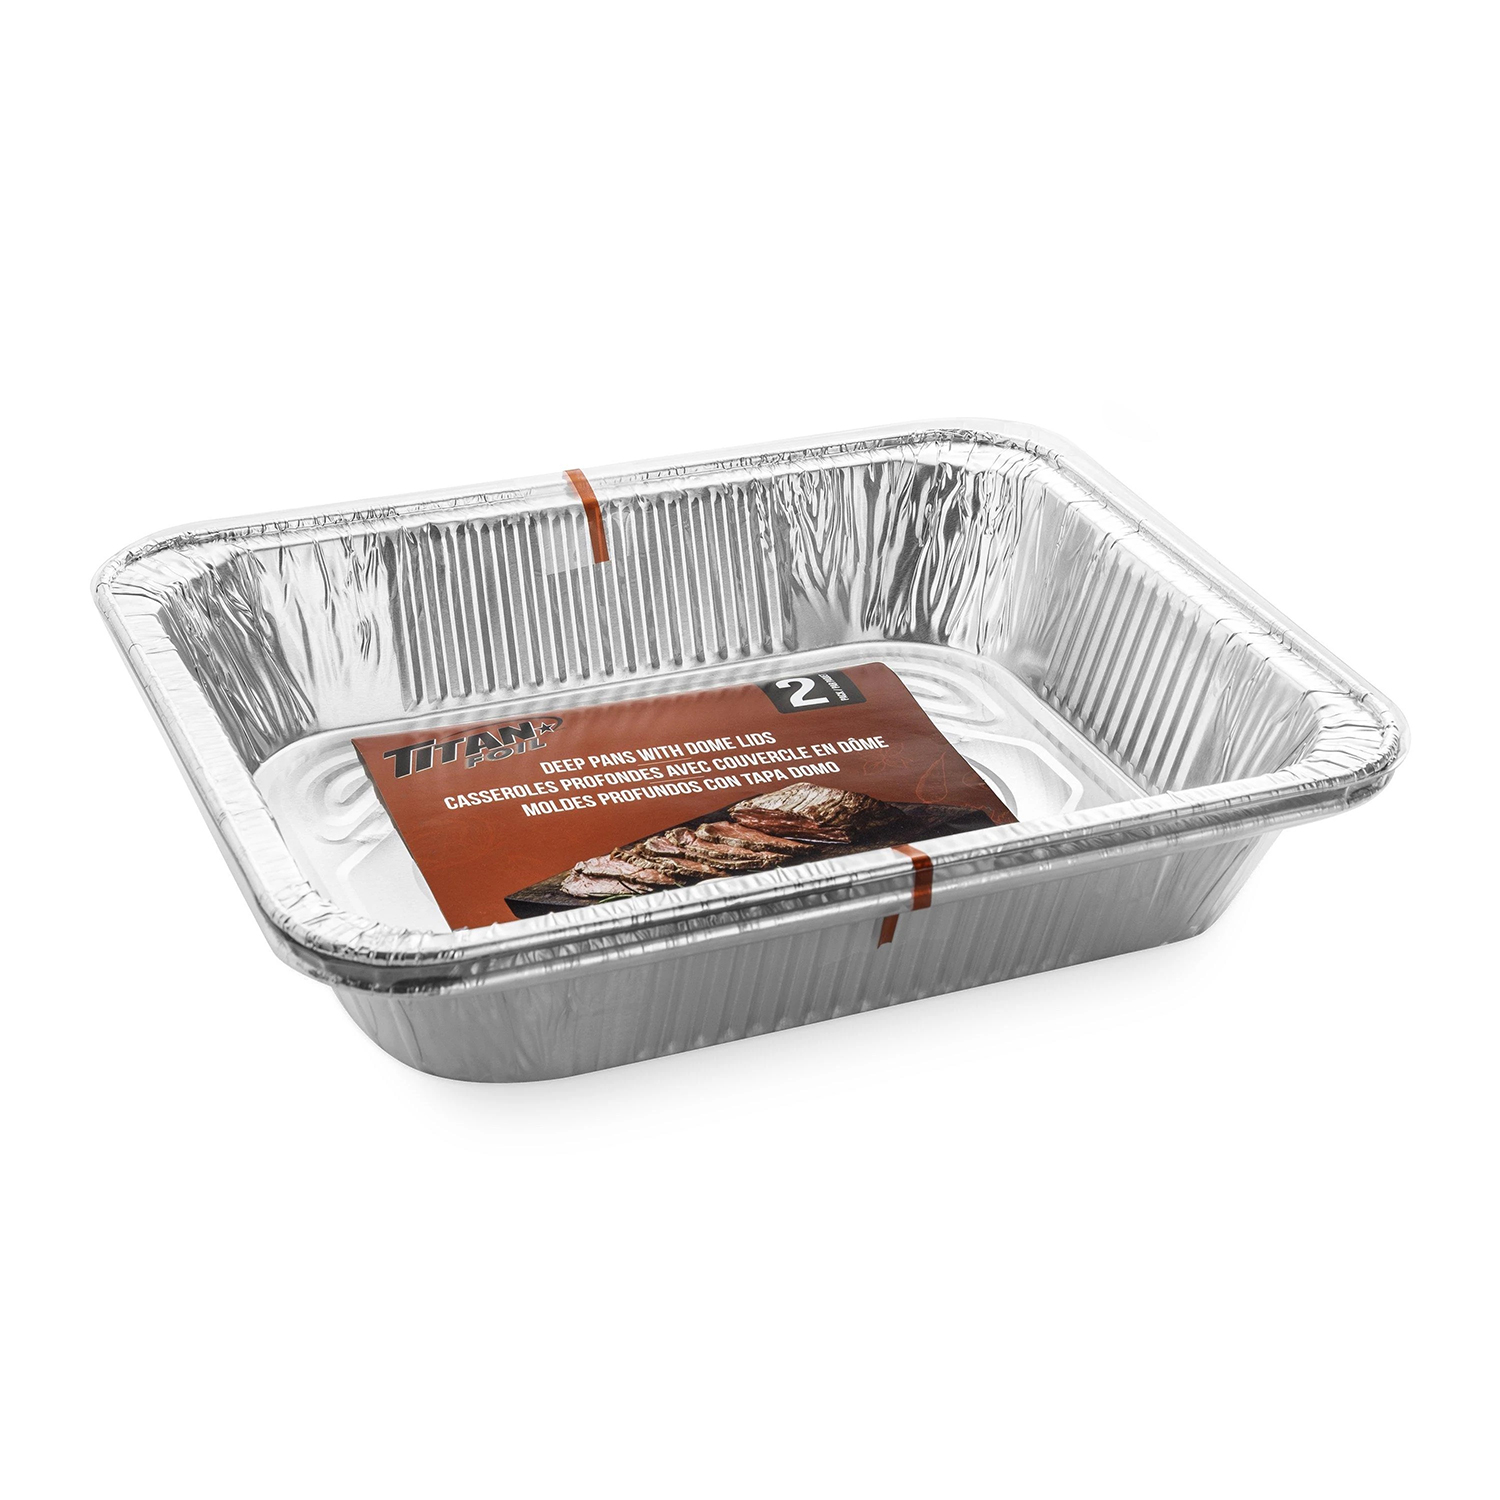 Titan Foil - Disposable aluminum deep pans with dome lids, 2-pk